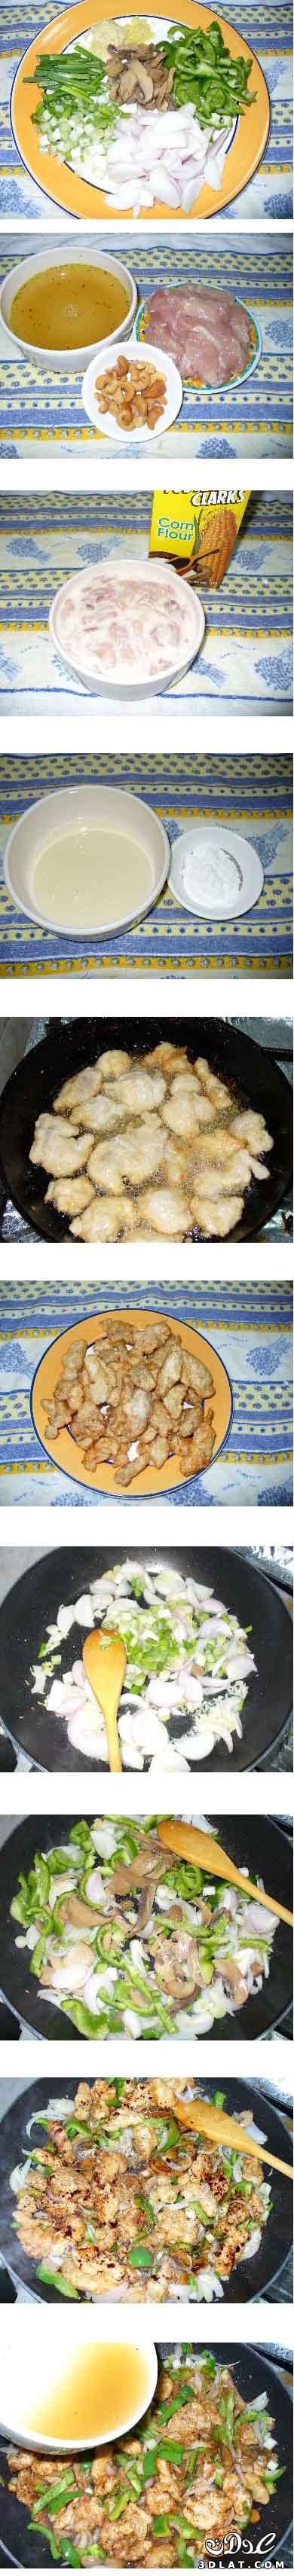 طبق دجاج بالكاجو من المطبخ الصينى بالصور